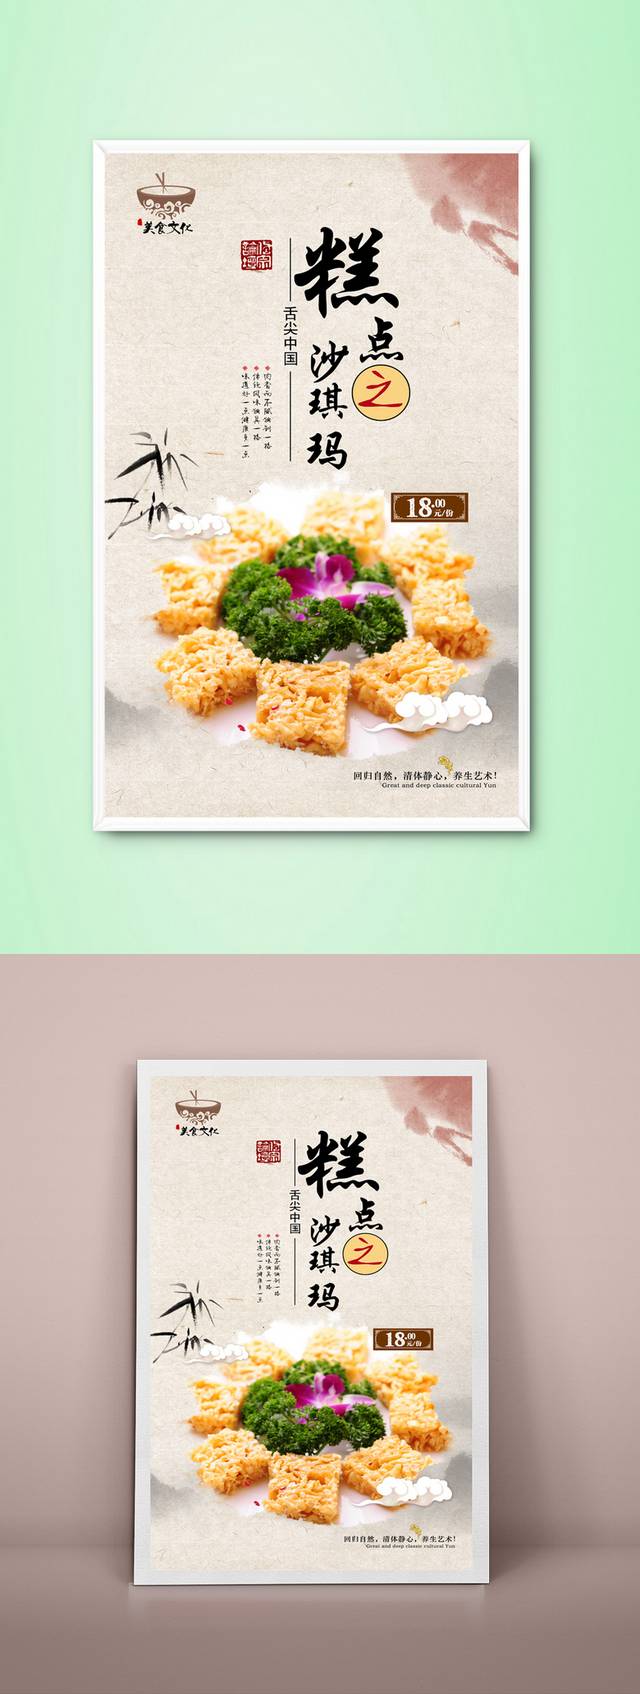 中式高档沙琪玛宣传海报设计